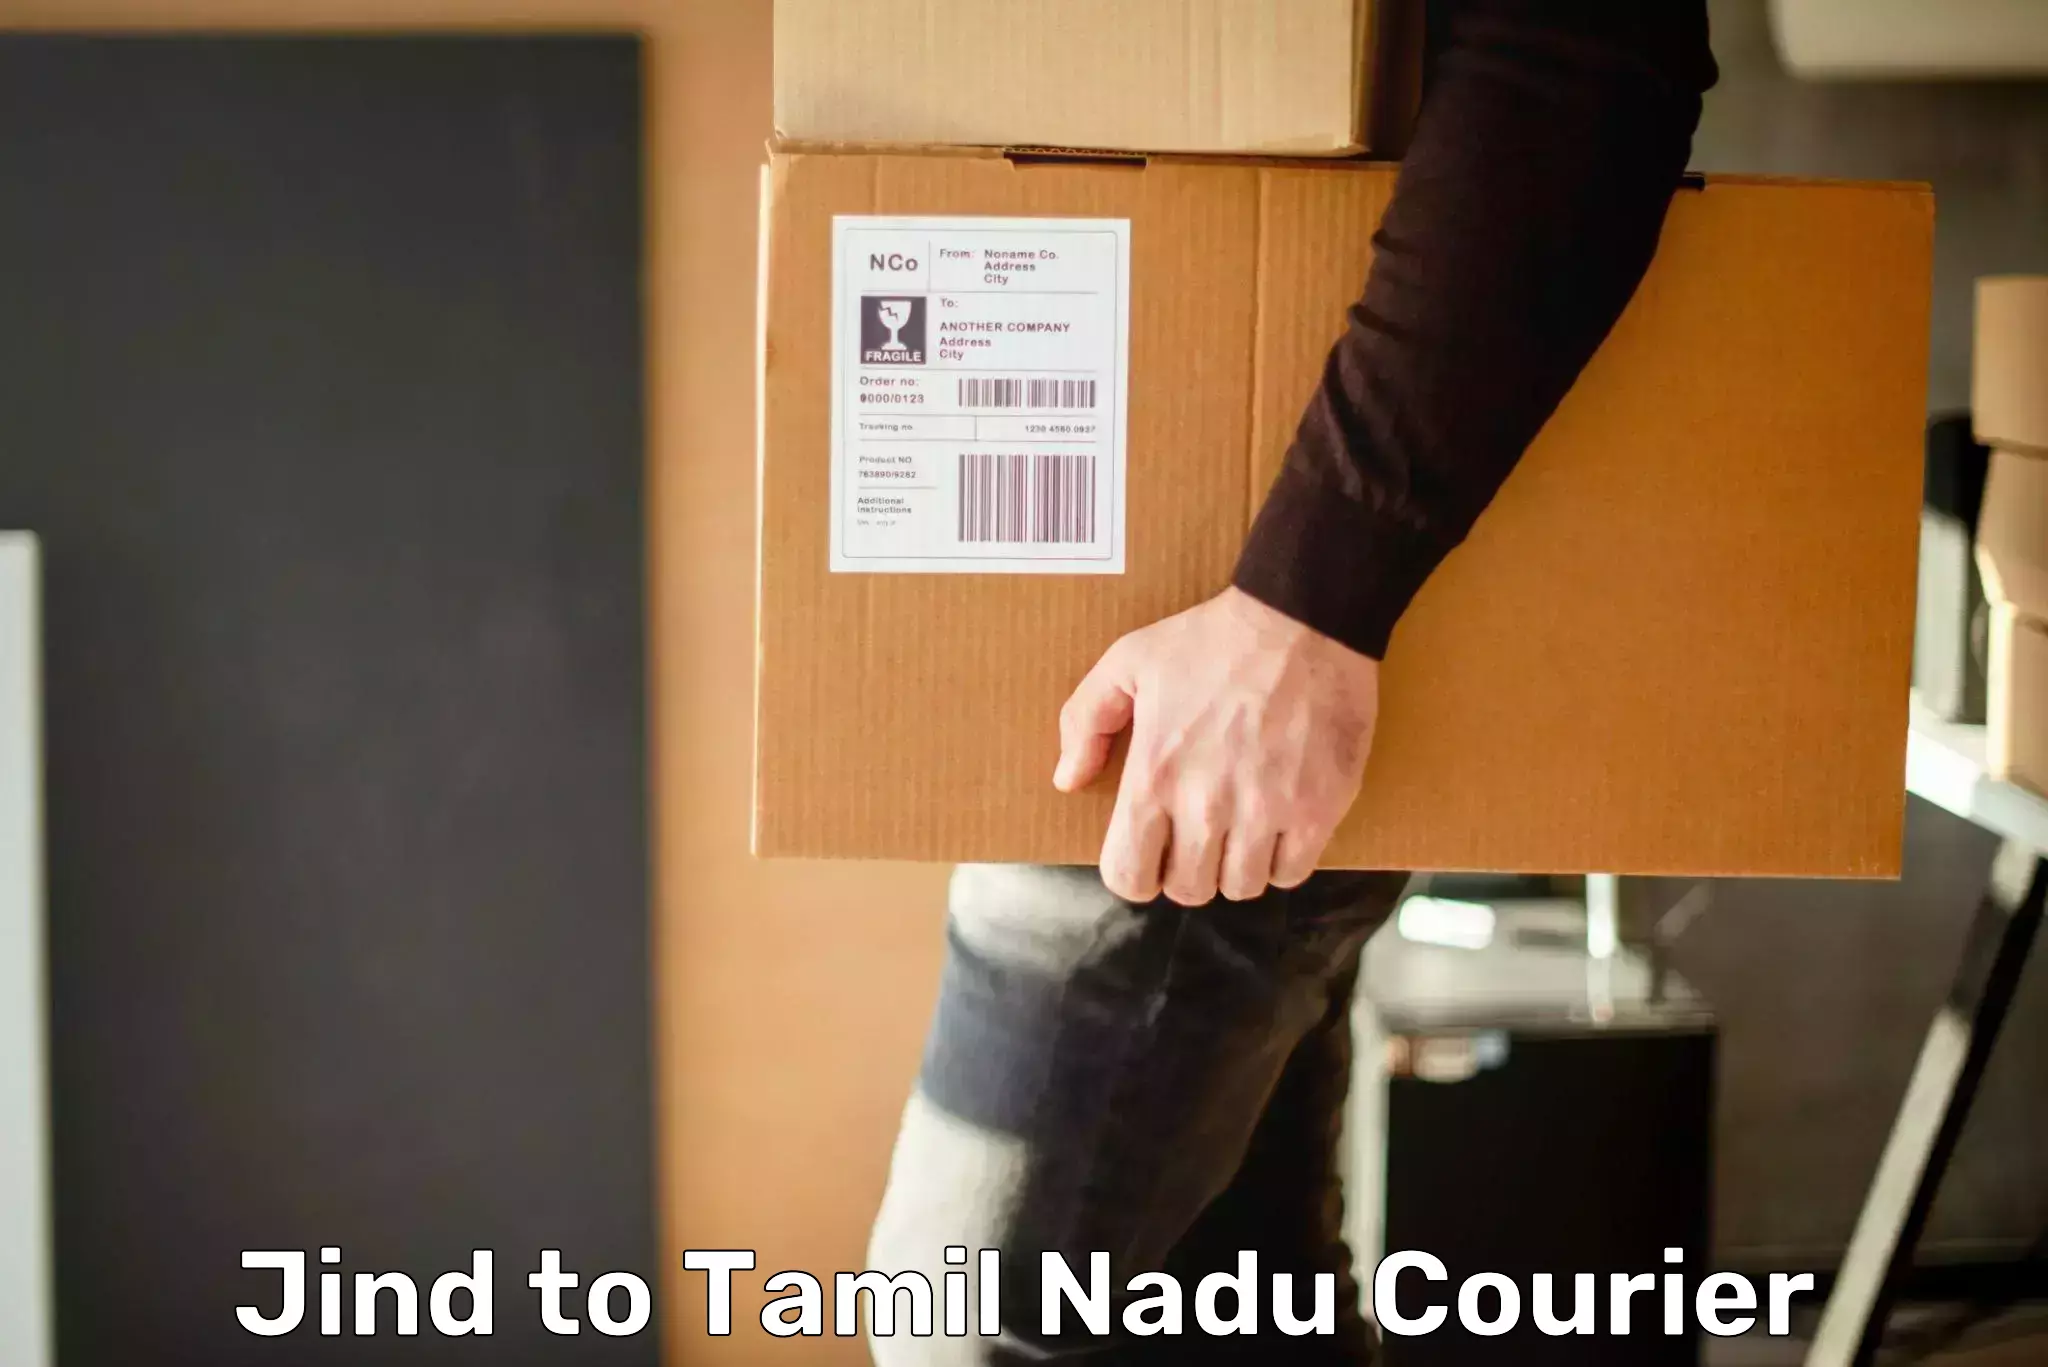 Lightweight parcel options Jind to Tamil Nadu